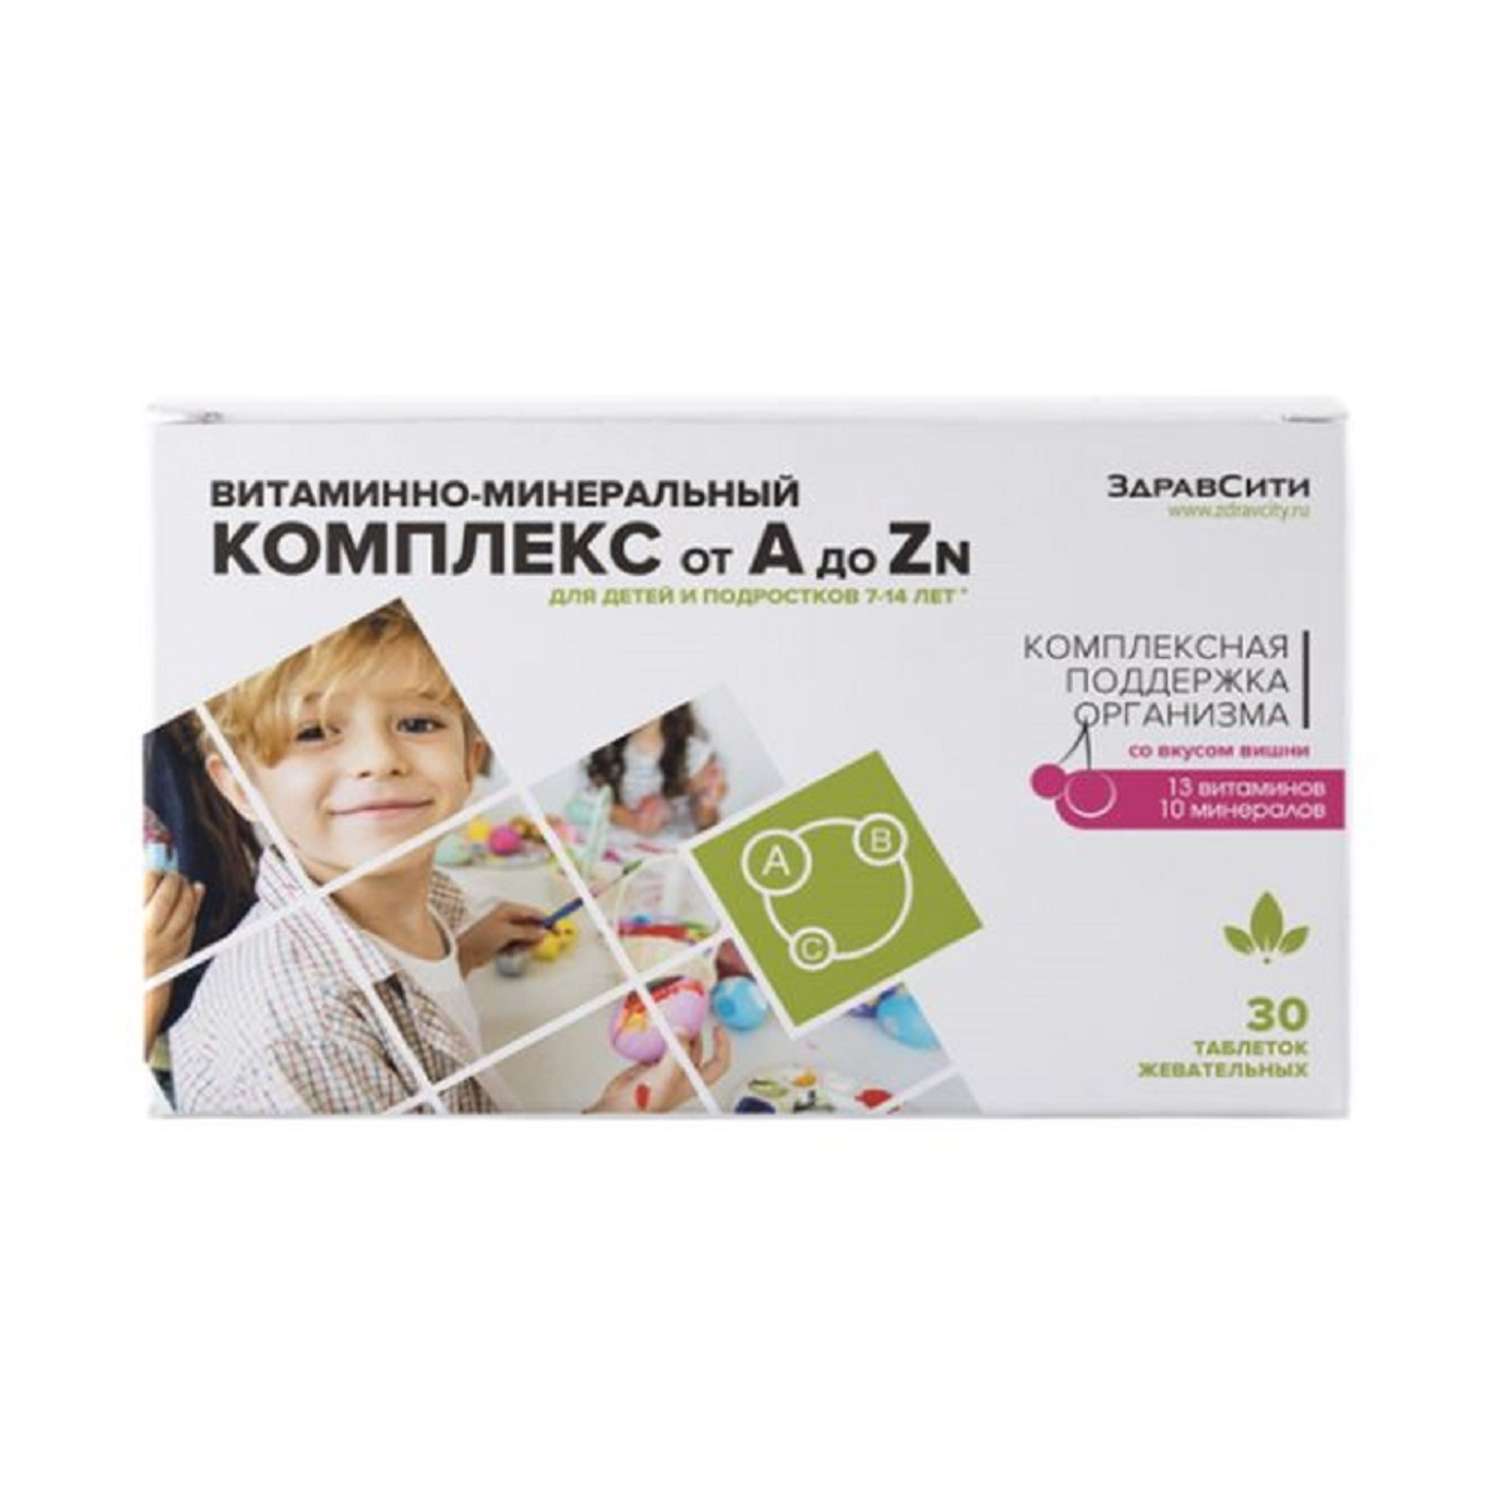 Витаминно-минеральный комплекс Здравсити для детей от 7 до 14 лет от A до Zn 30 таблеток - фото 1